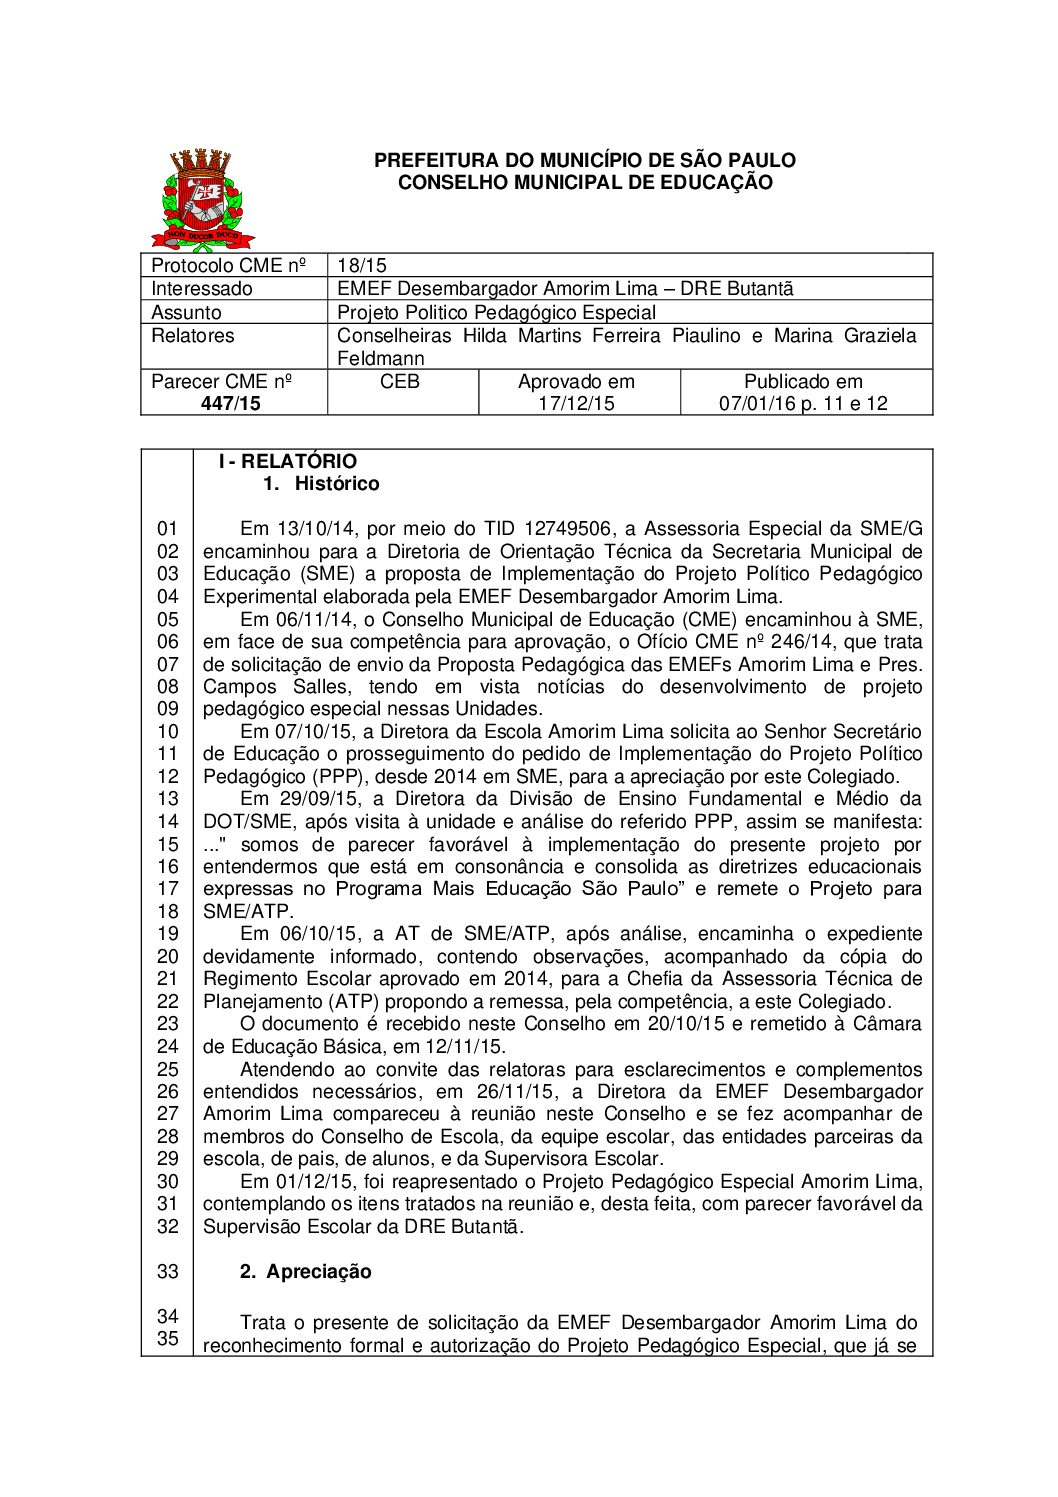 Parecer CME nº 447/2015 - EMEF Desembargador Amorim Lima (DRE Butantã) - Projeto Politico Pedagógico Especial 